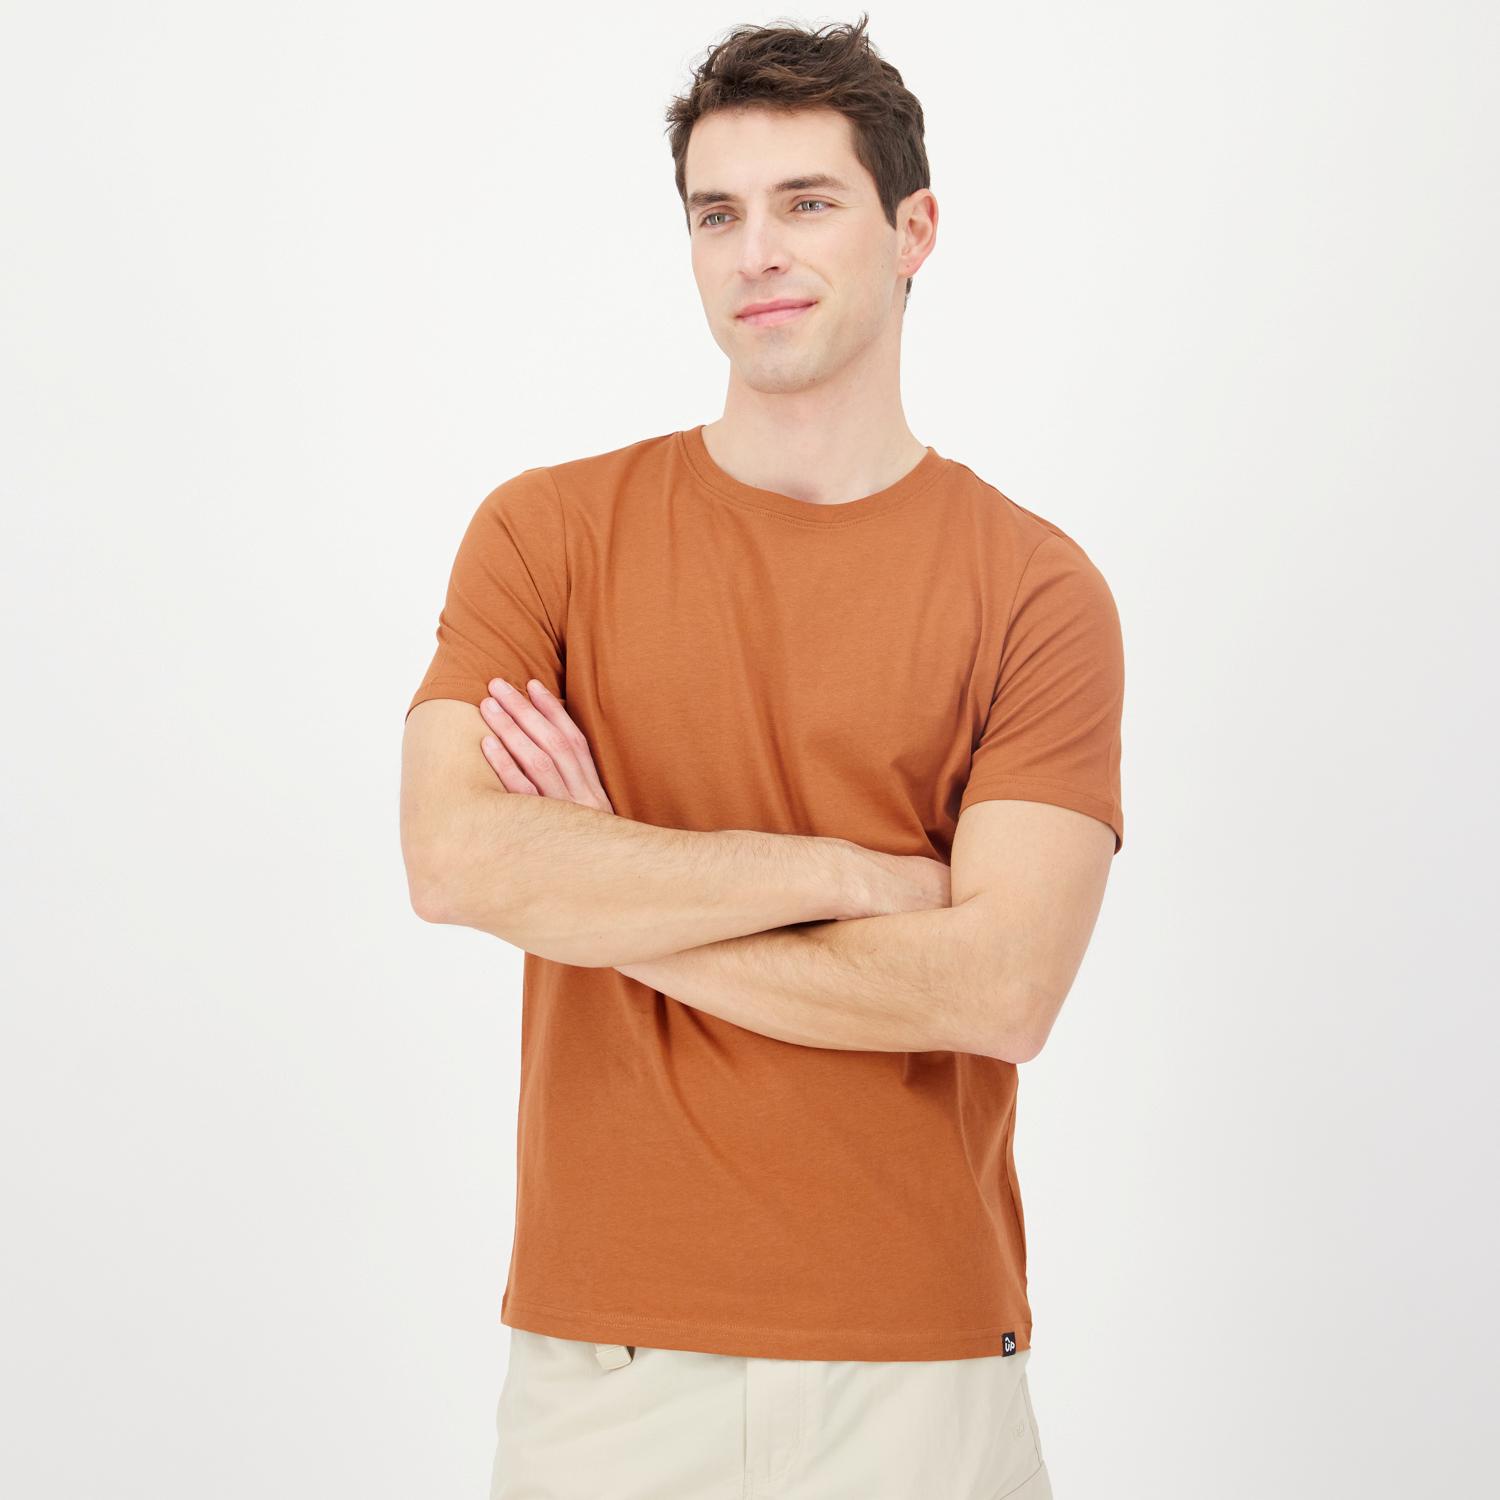 Las mejores ofertas en Camisetas de manga larga marrón para hombres